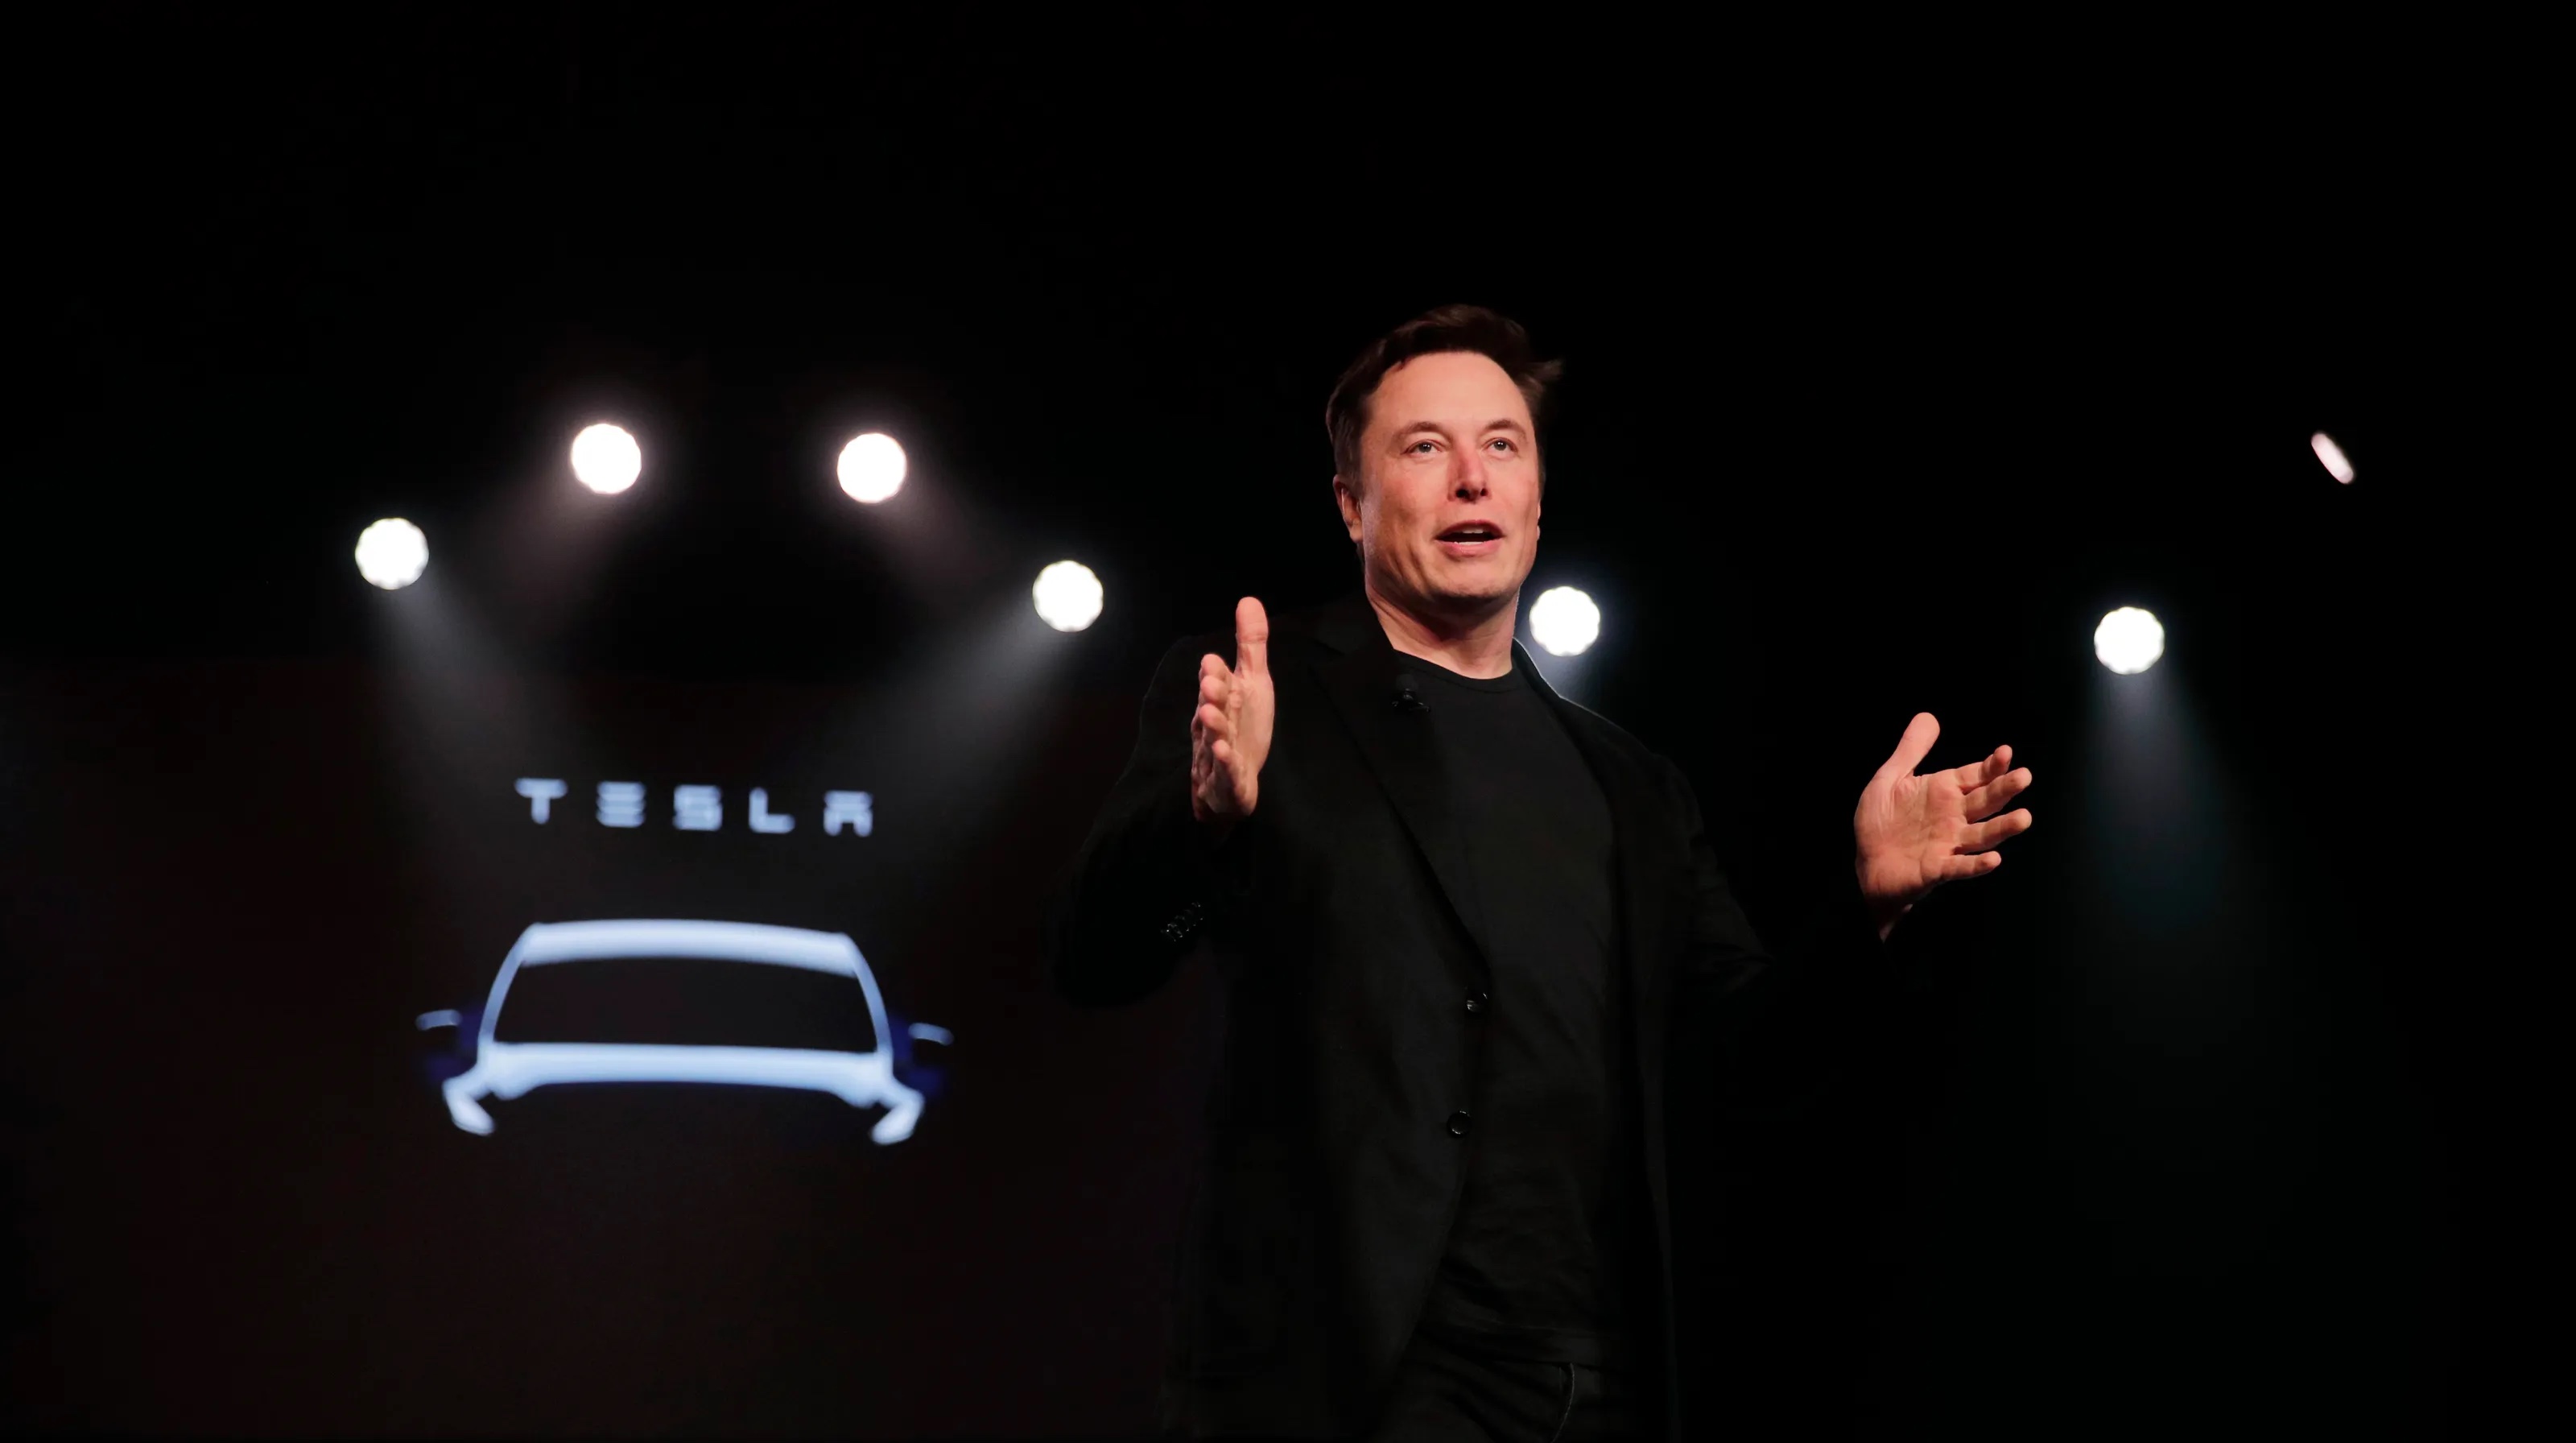 Vì sao việc giảm giá của Tesla có thể thúc đẩy một cuộc chiến giá EV? - Ảnh 1